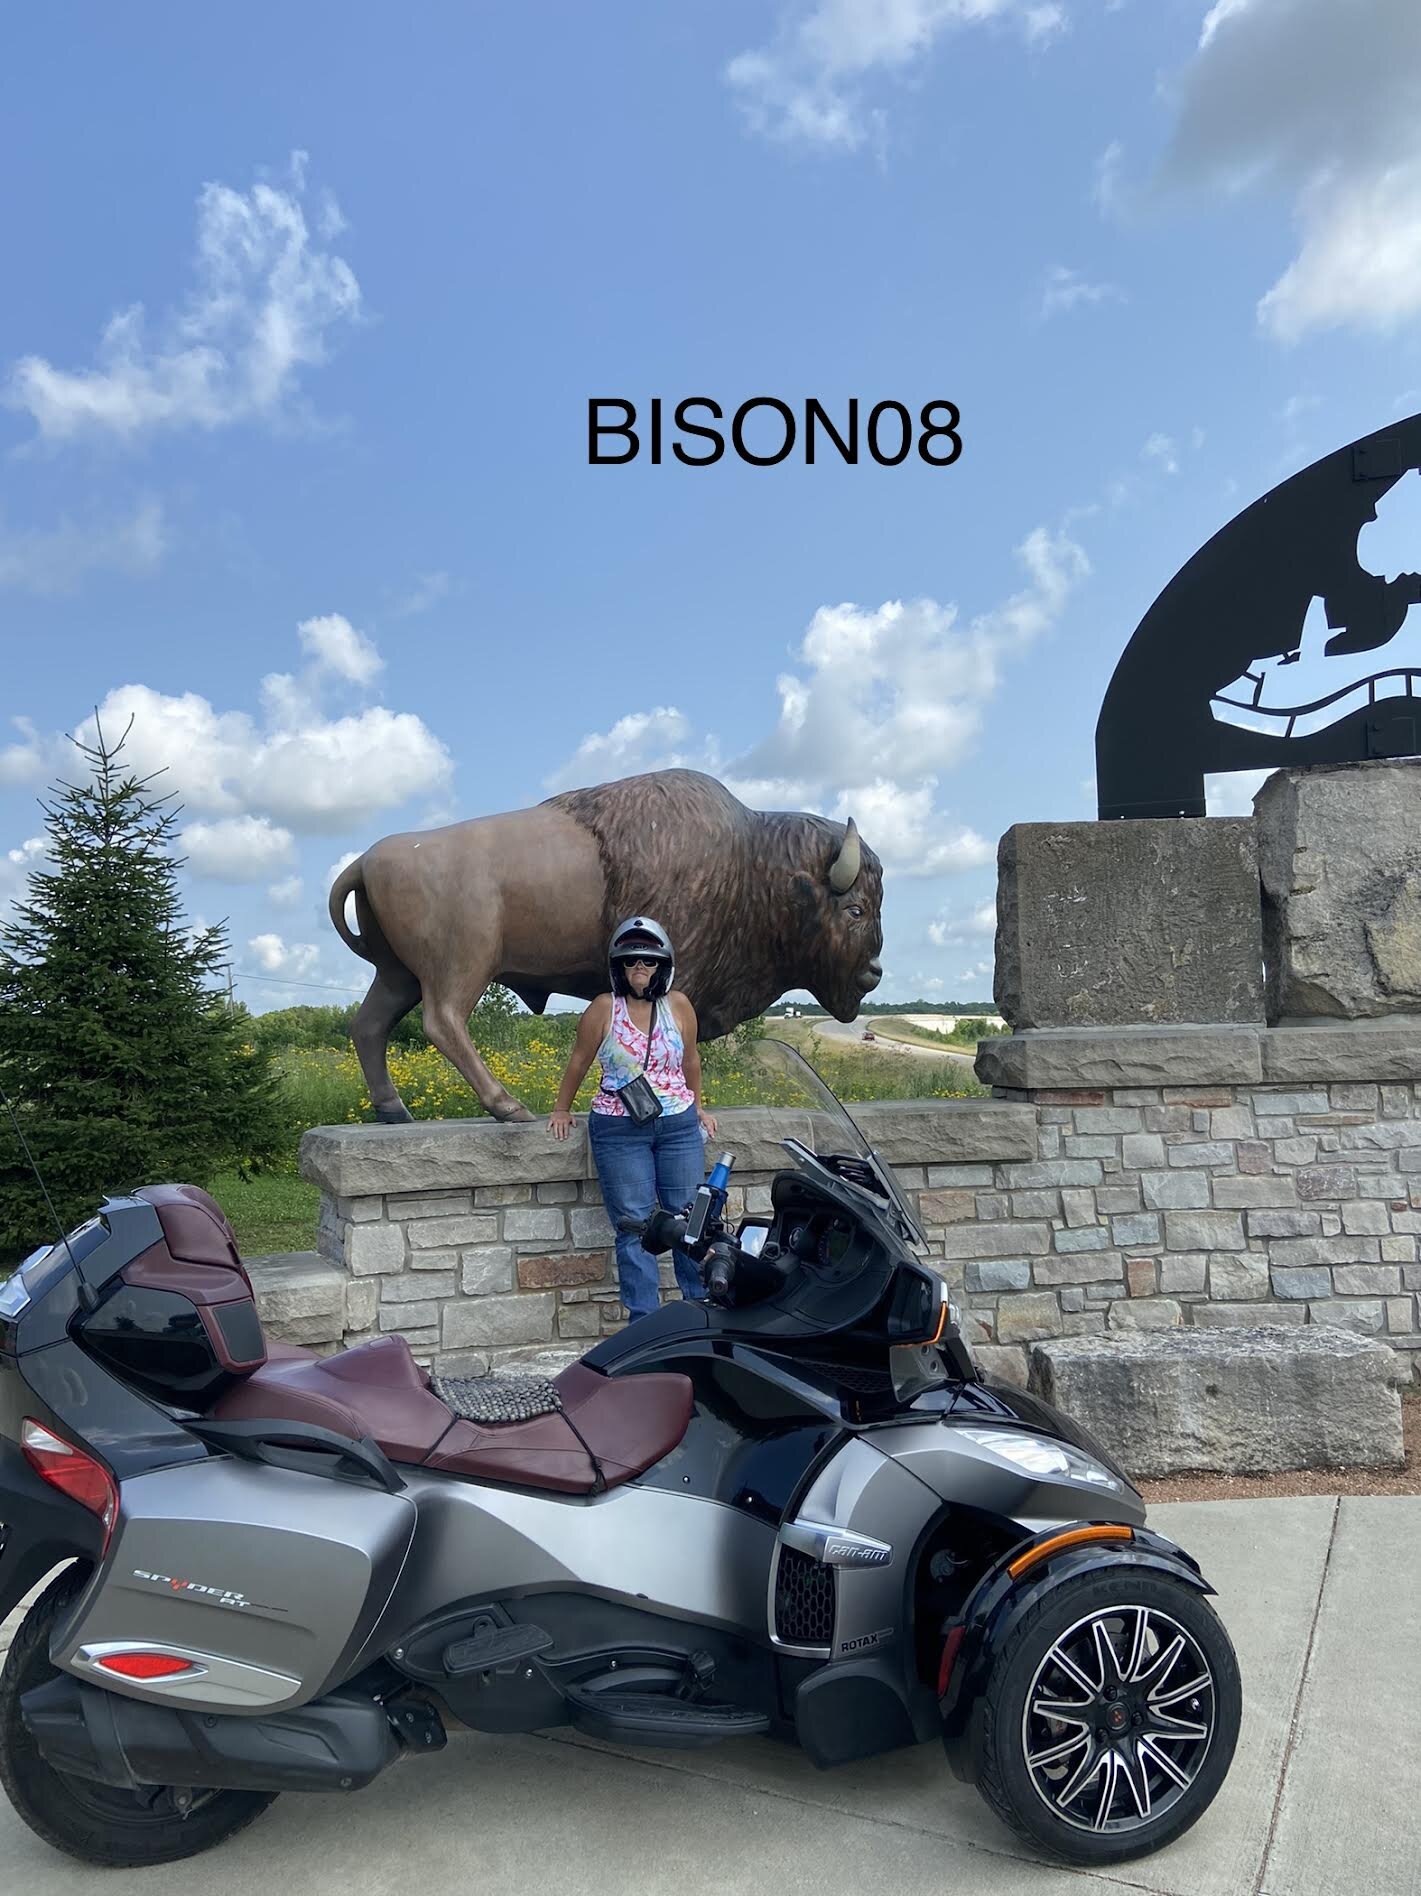 bison08b.jpg